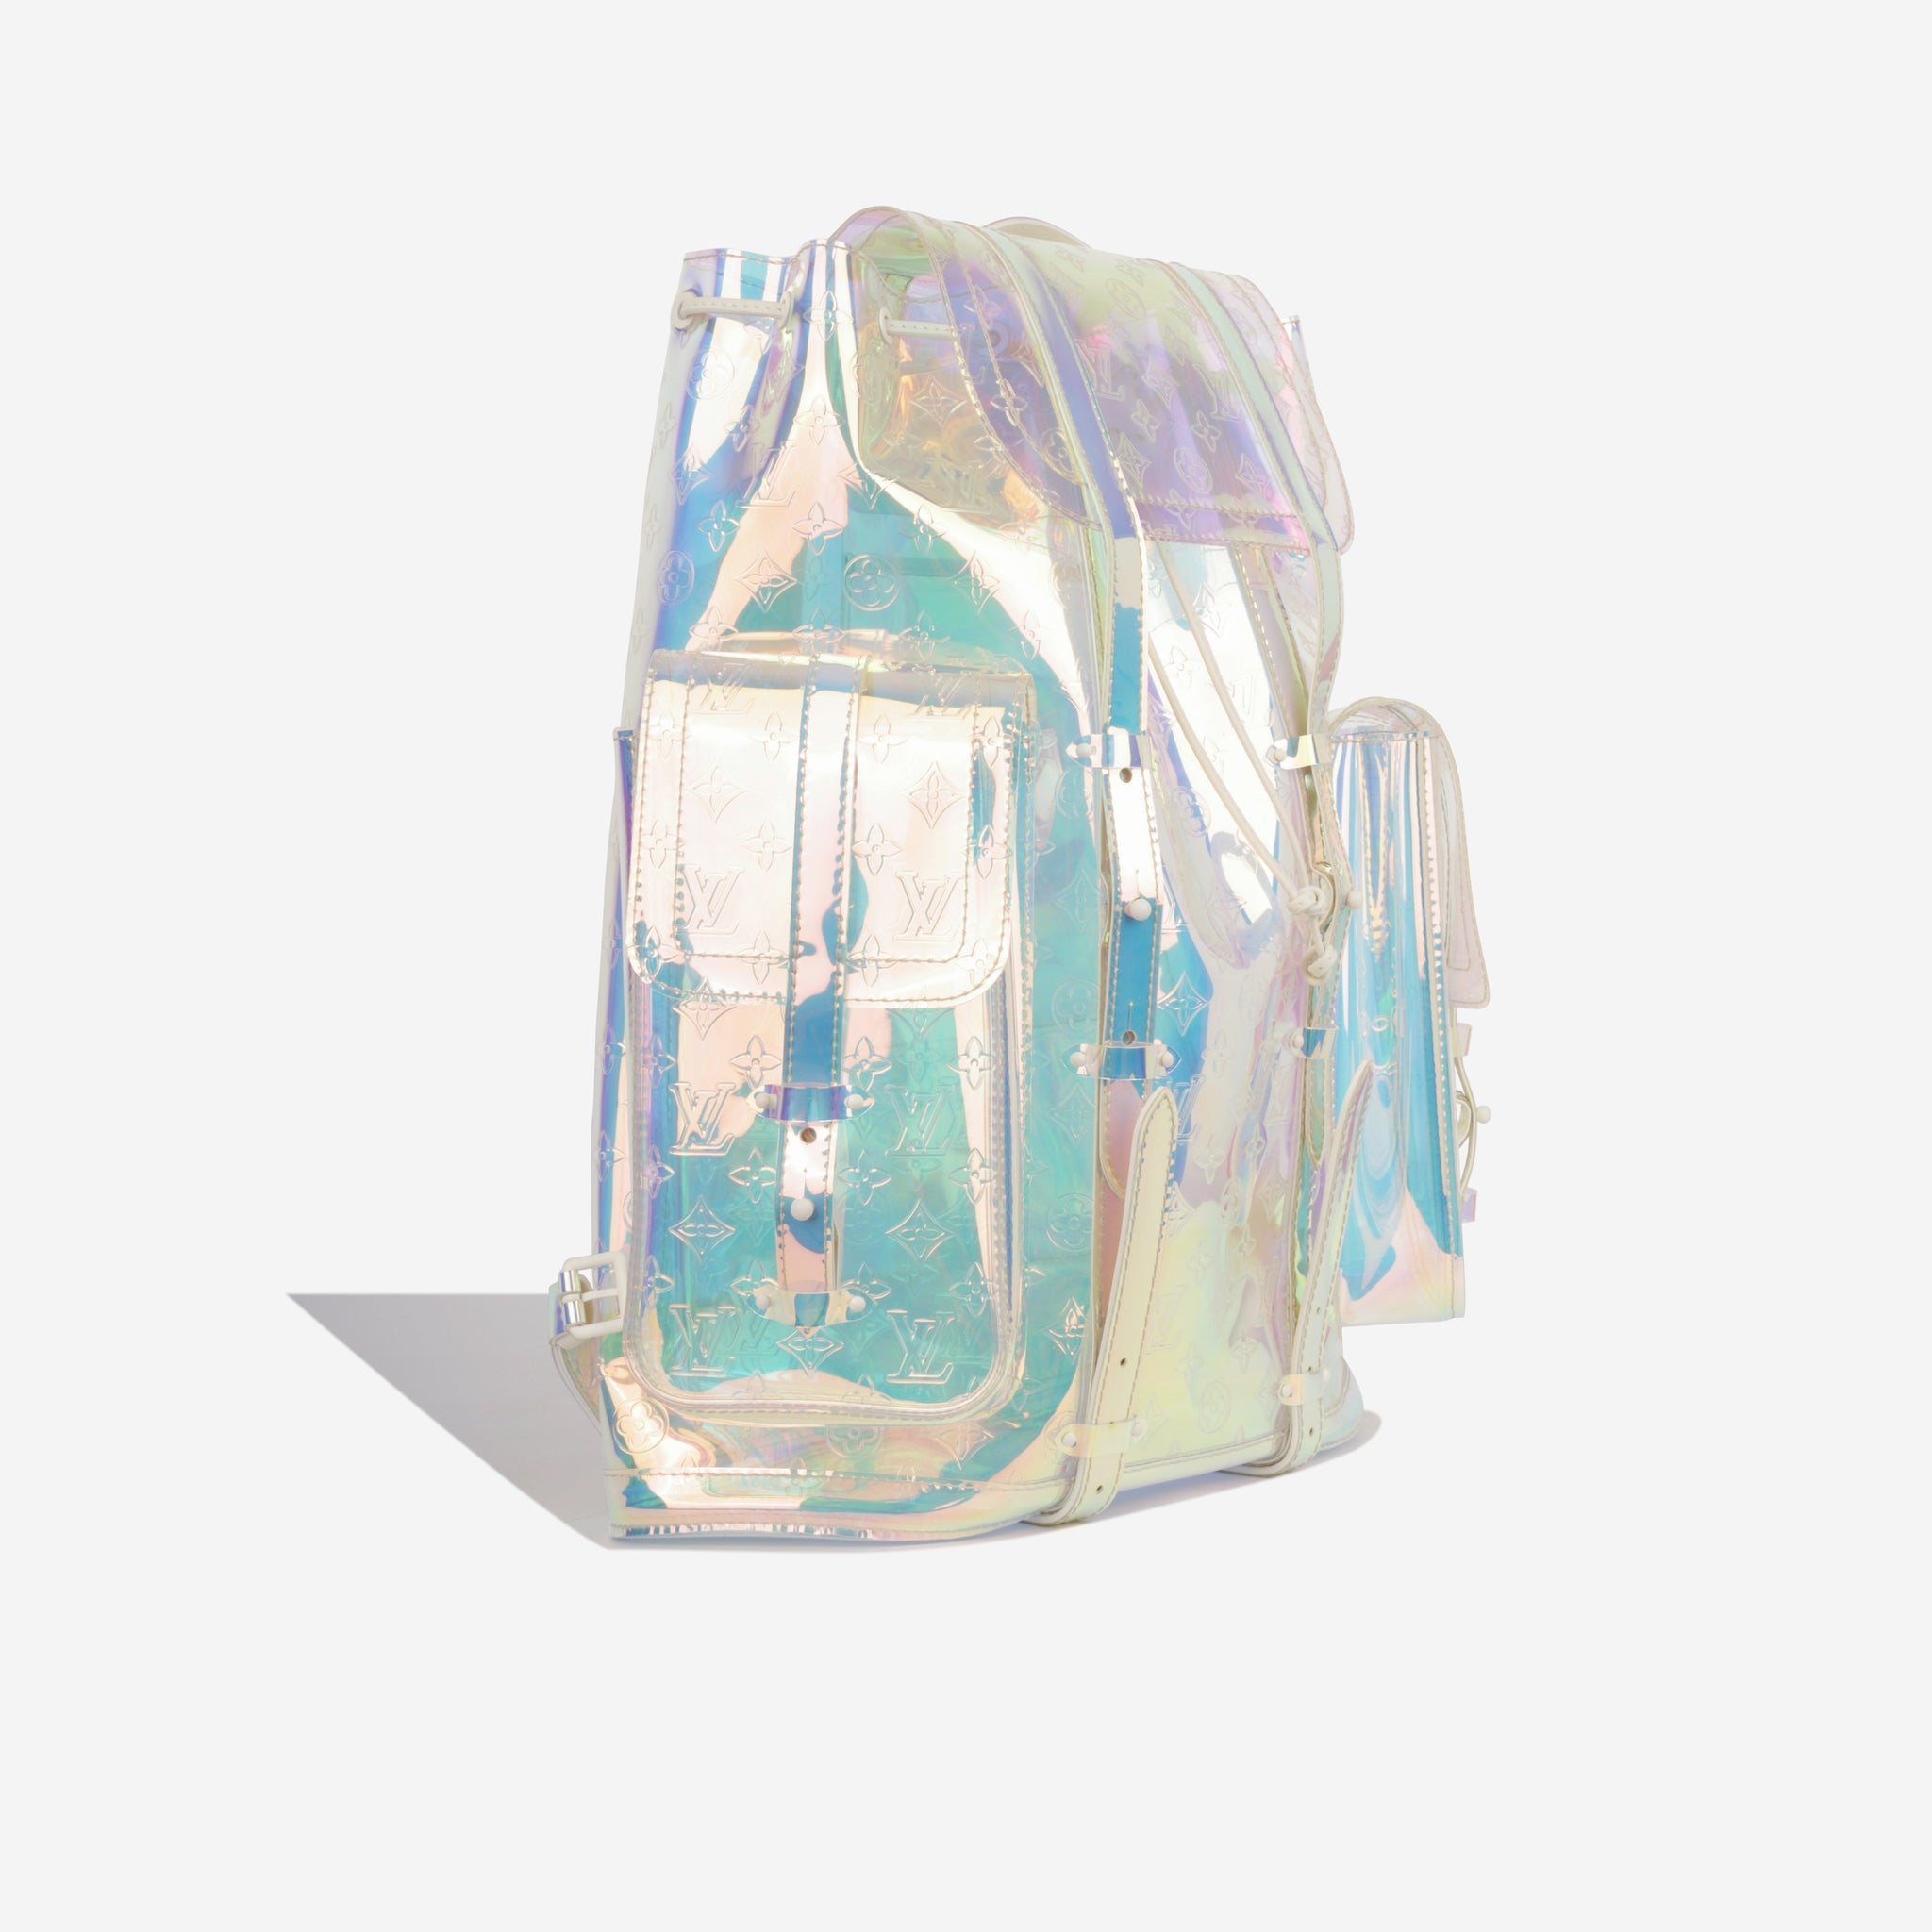 Louis Vuitton X Virgil Abloh PVC Prism Christopher Backpack, myGemma, NL